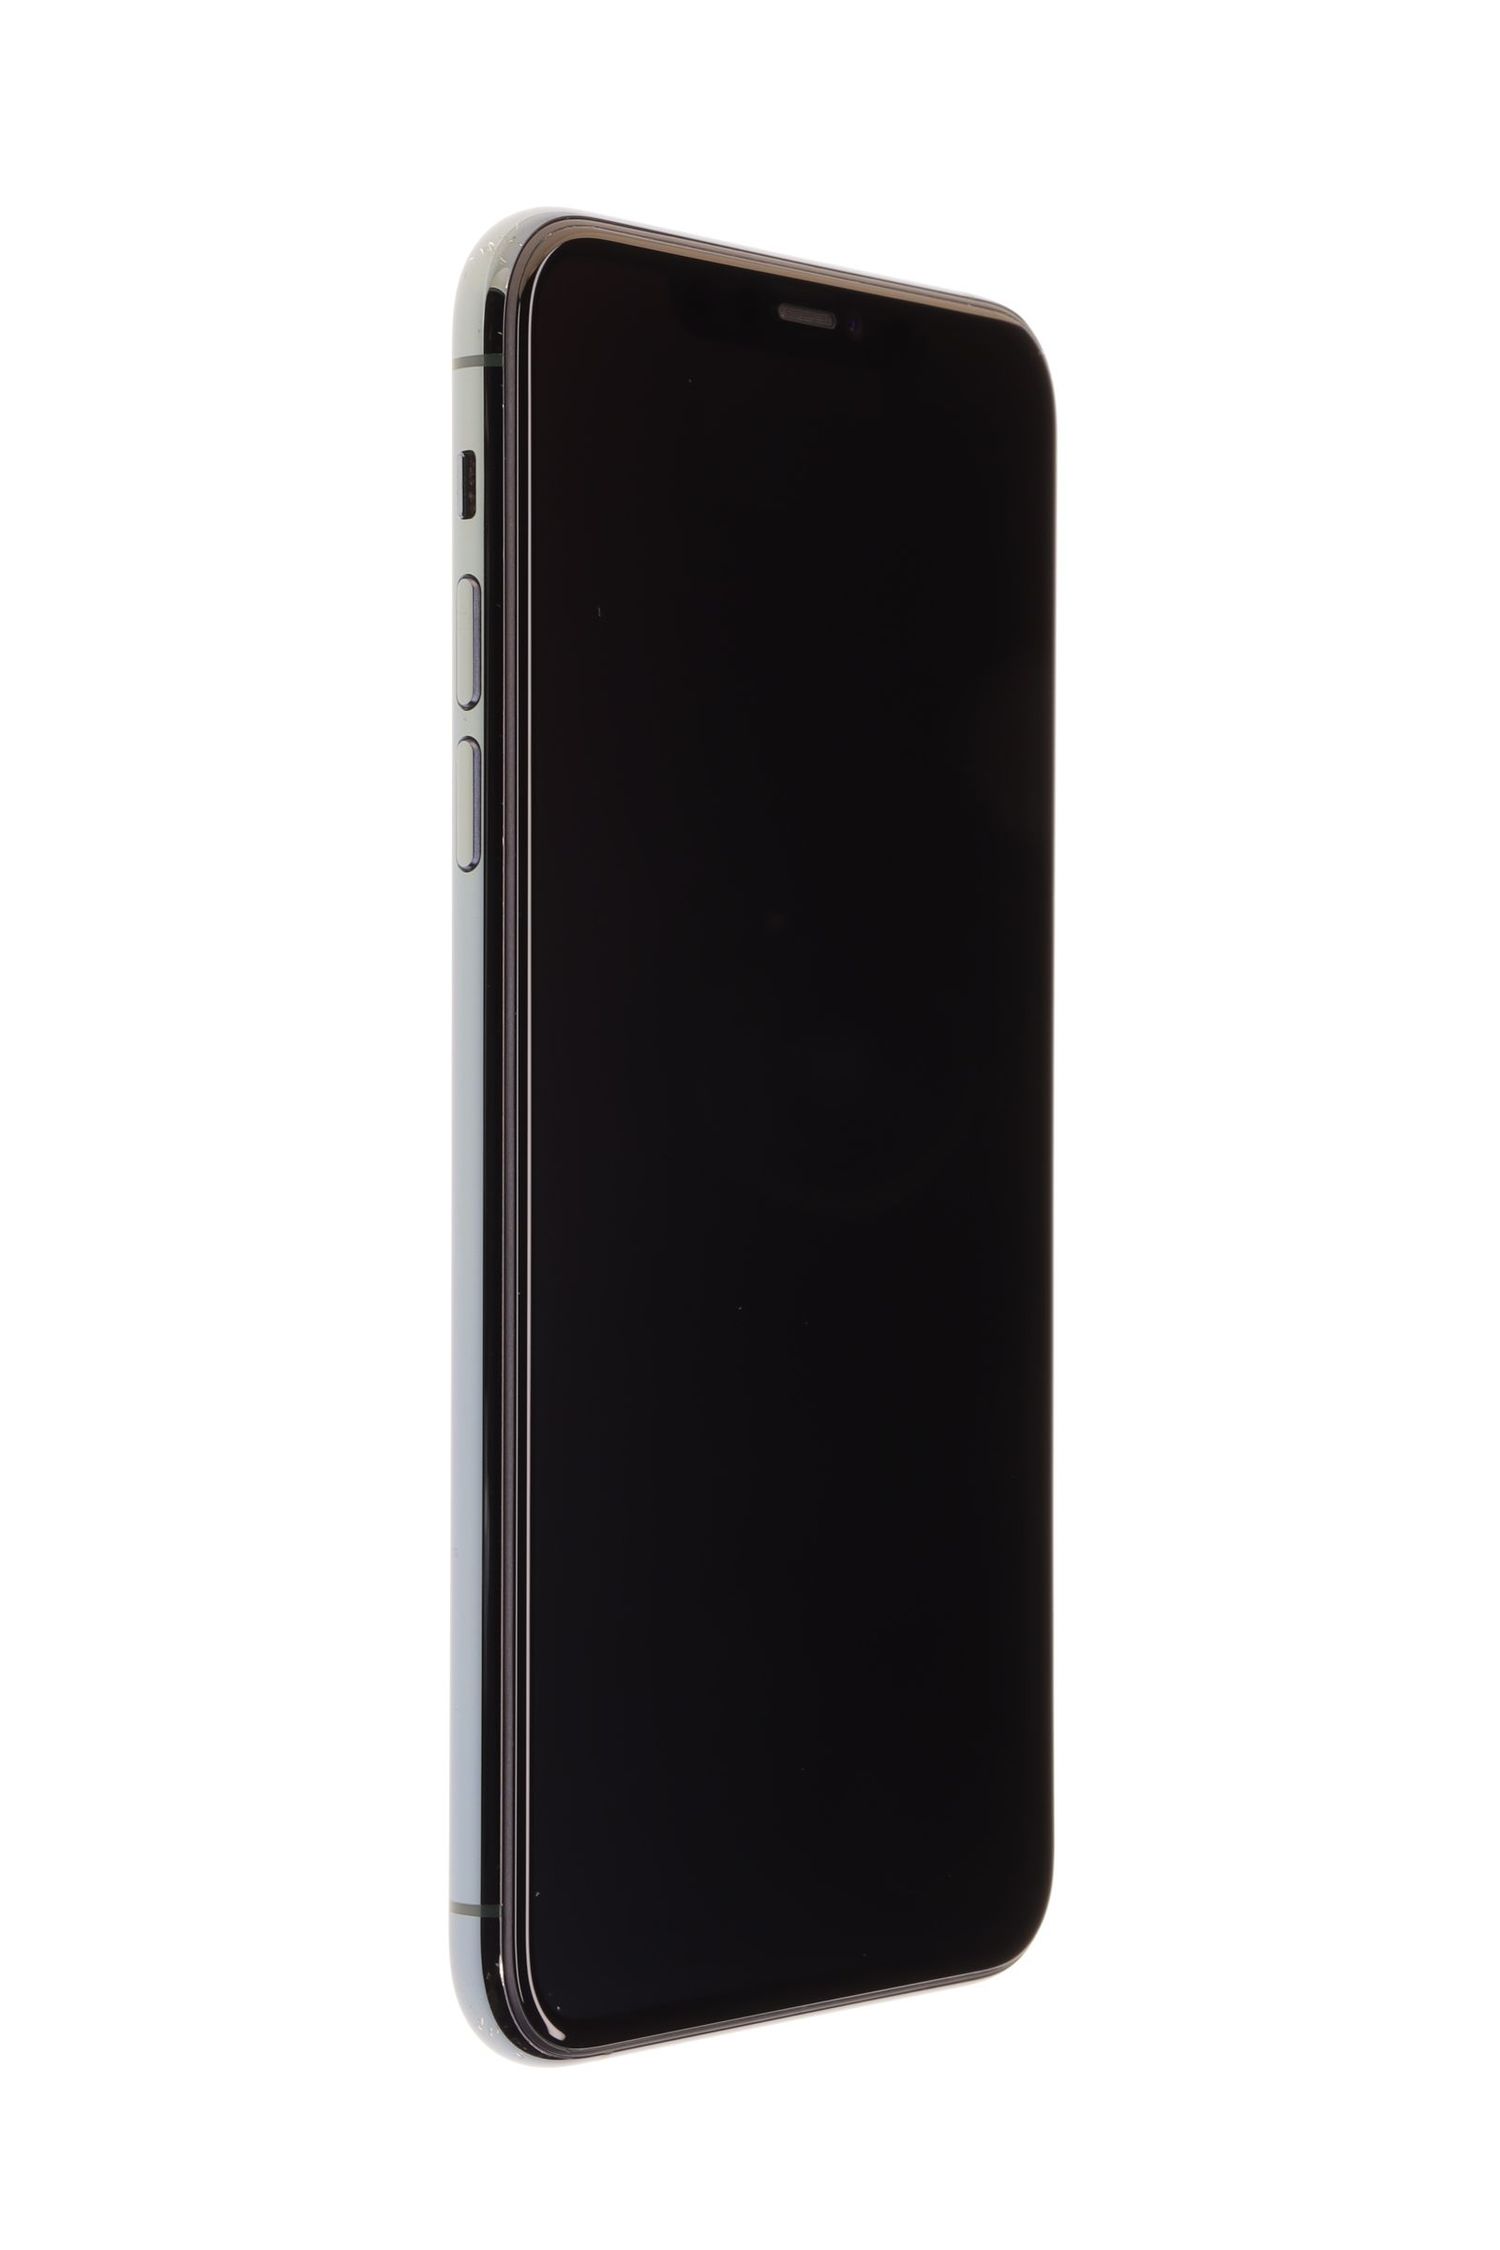 Κινητό τηλέφωνο Apple iPhone 11 Pro Max, Midnight Green, 64 GB, Foarte Bun